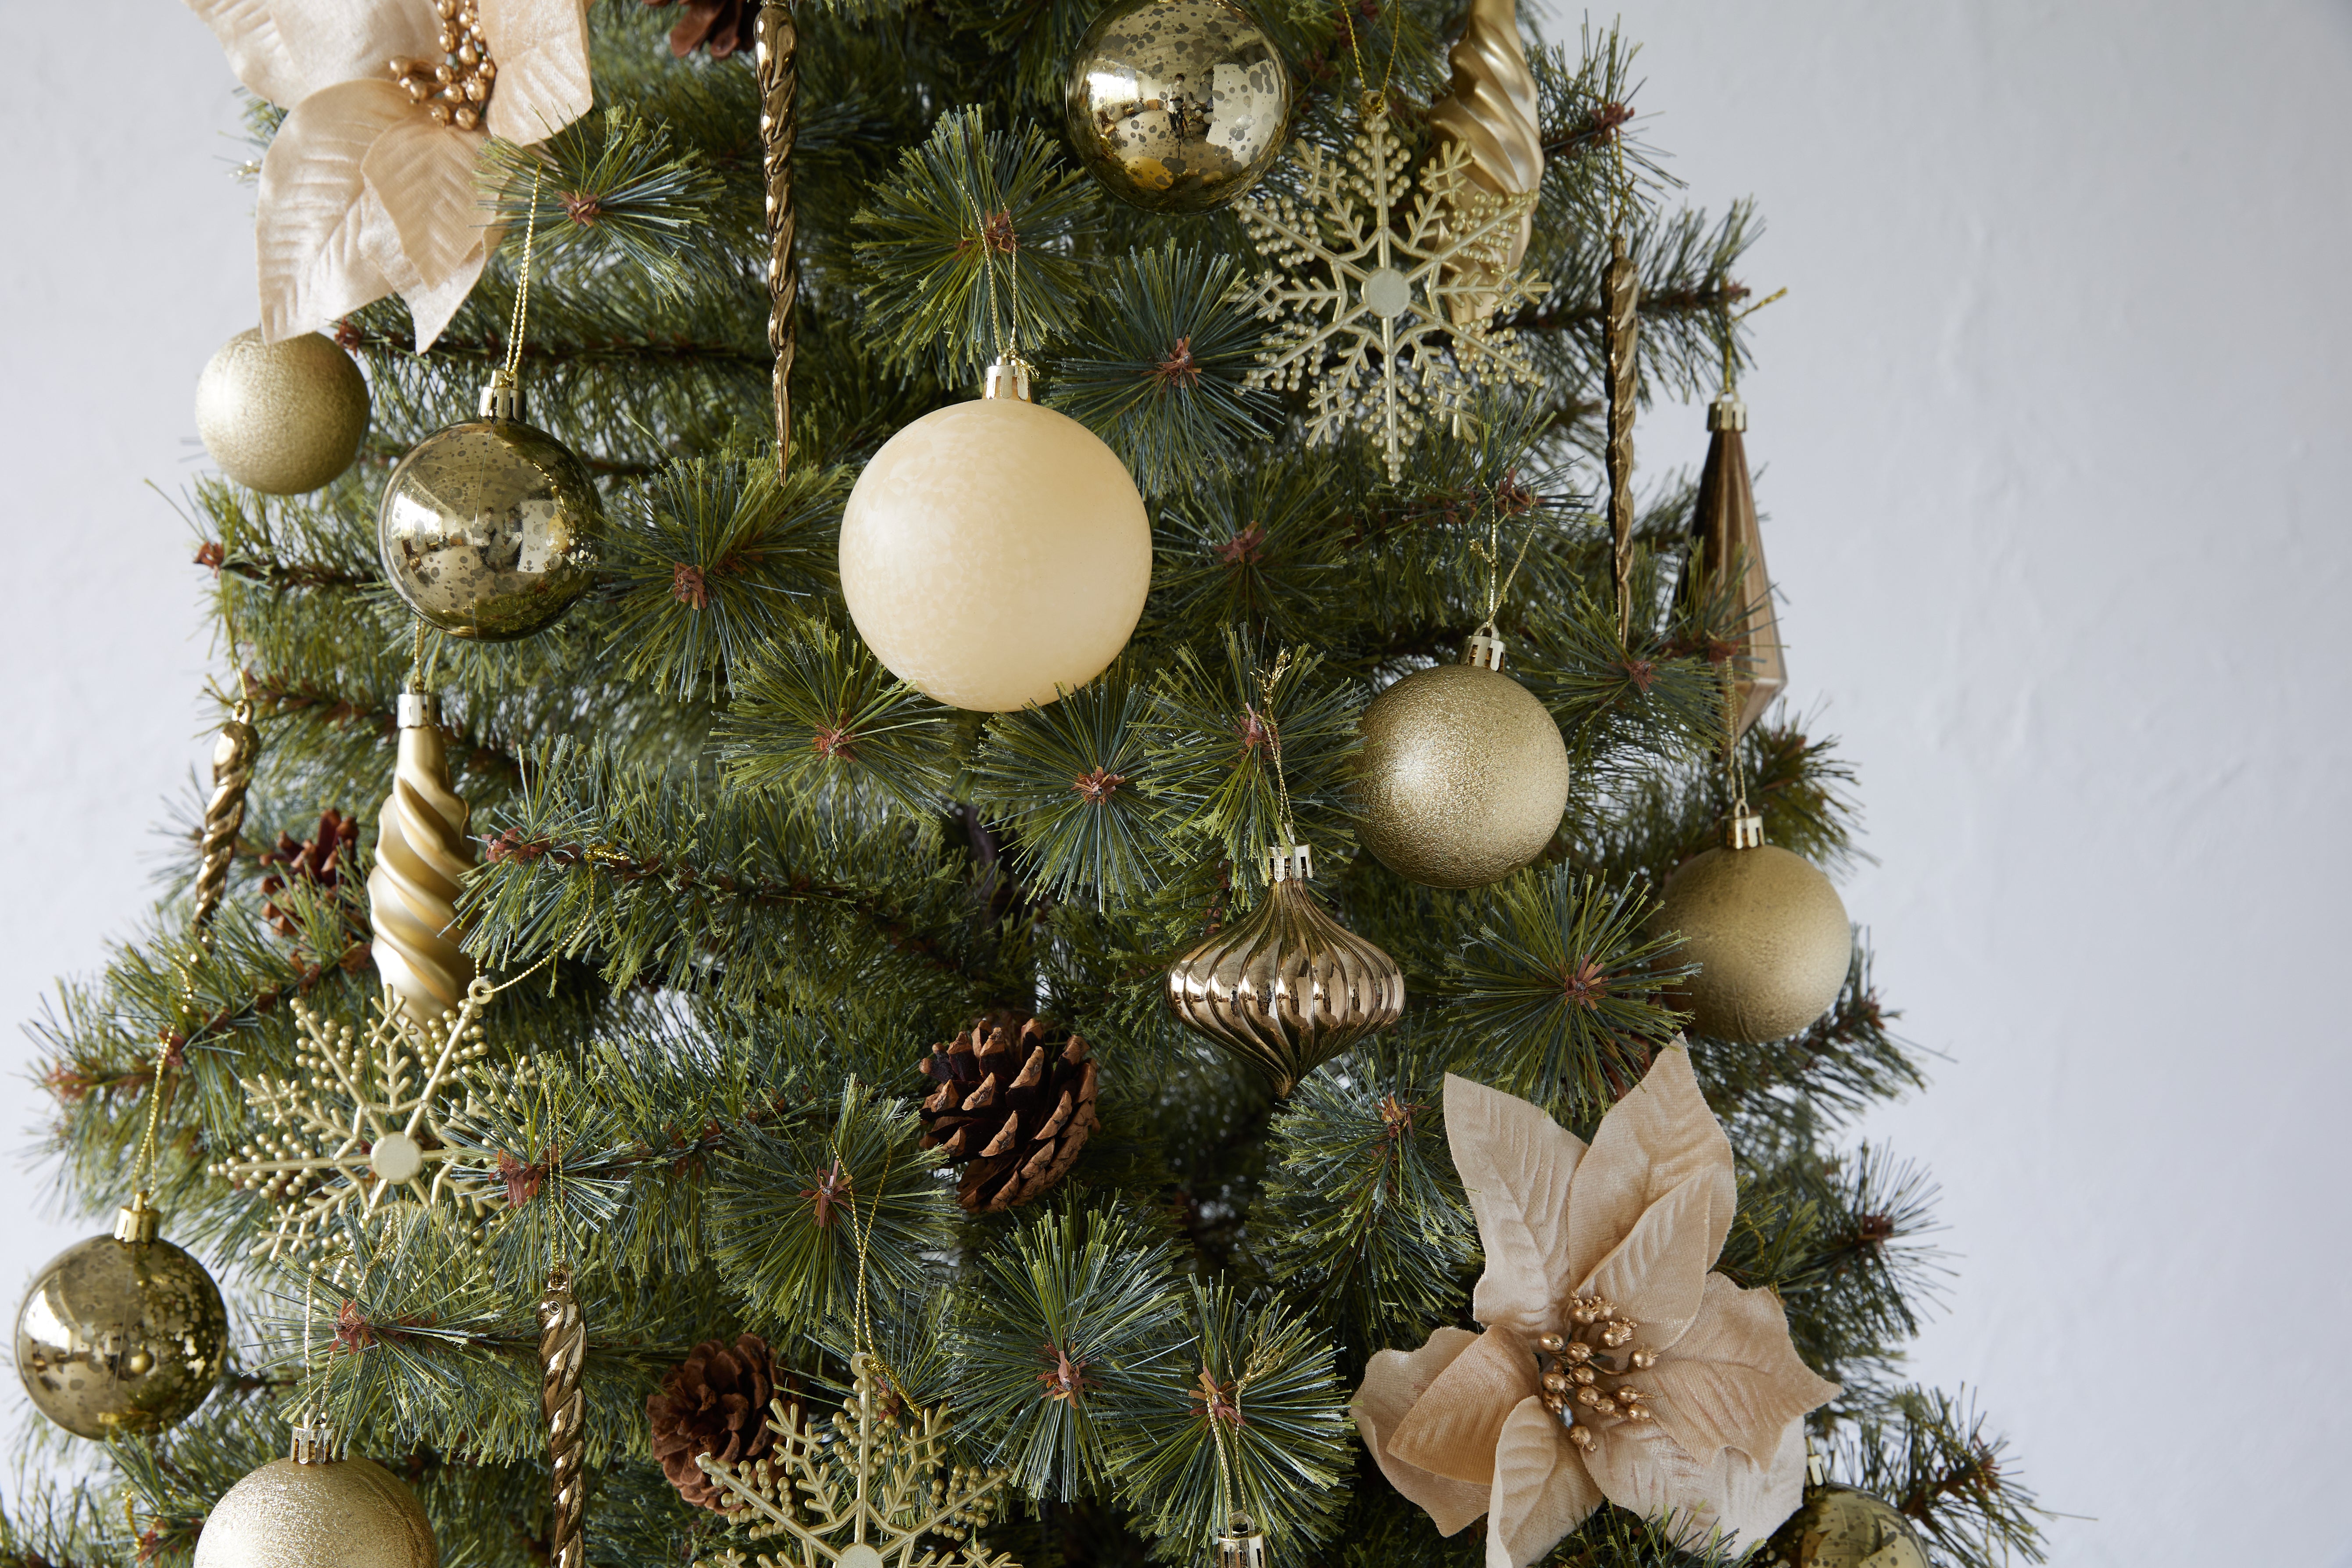 クリスマスツリー Alsace Tree アルザスツリー – alsace_tree